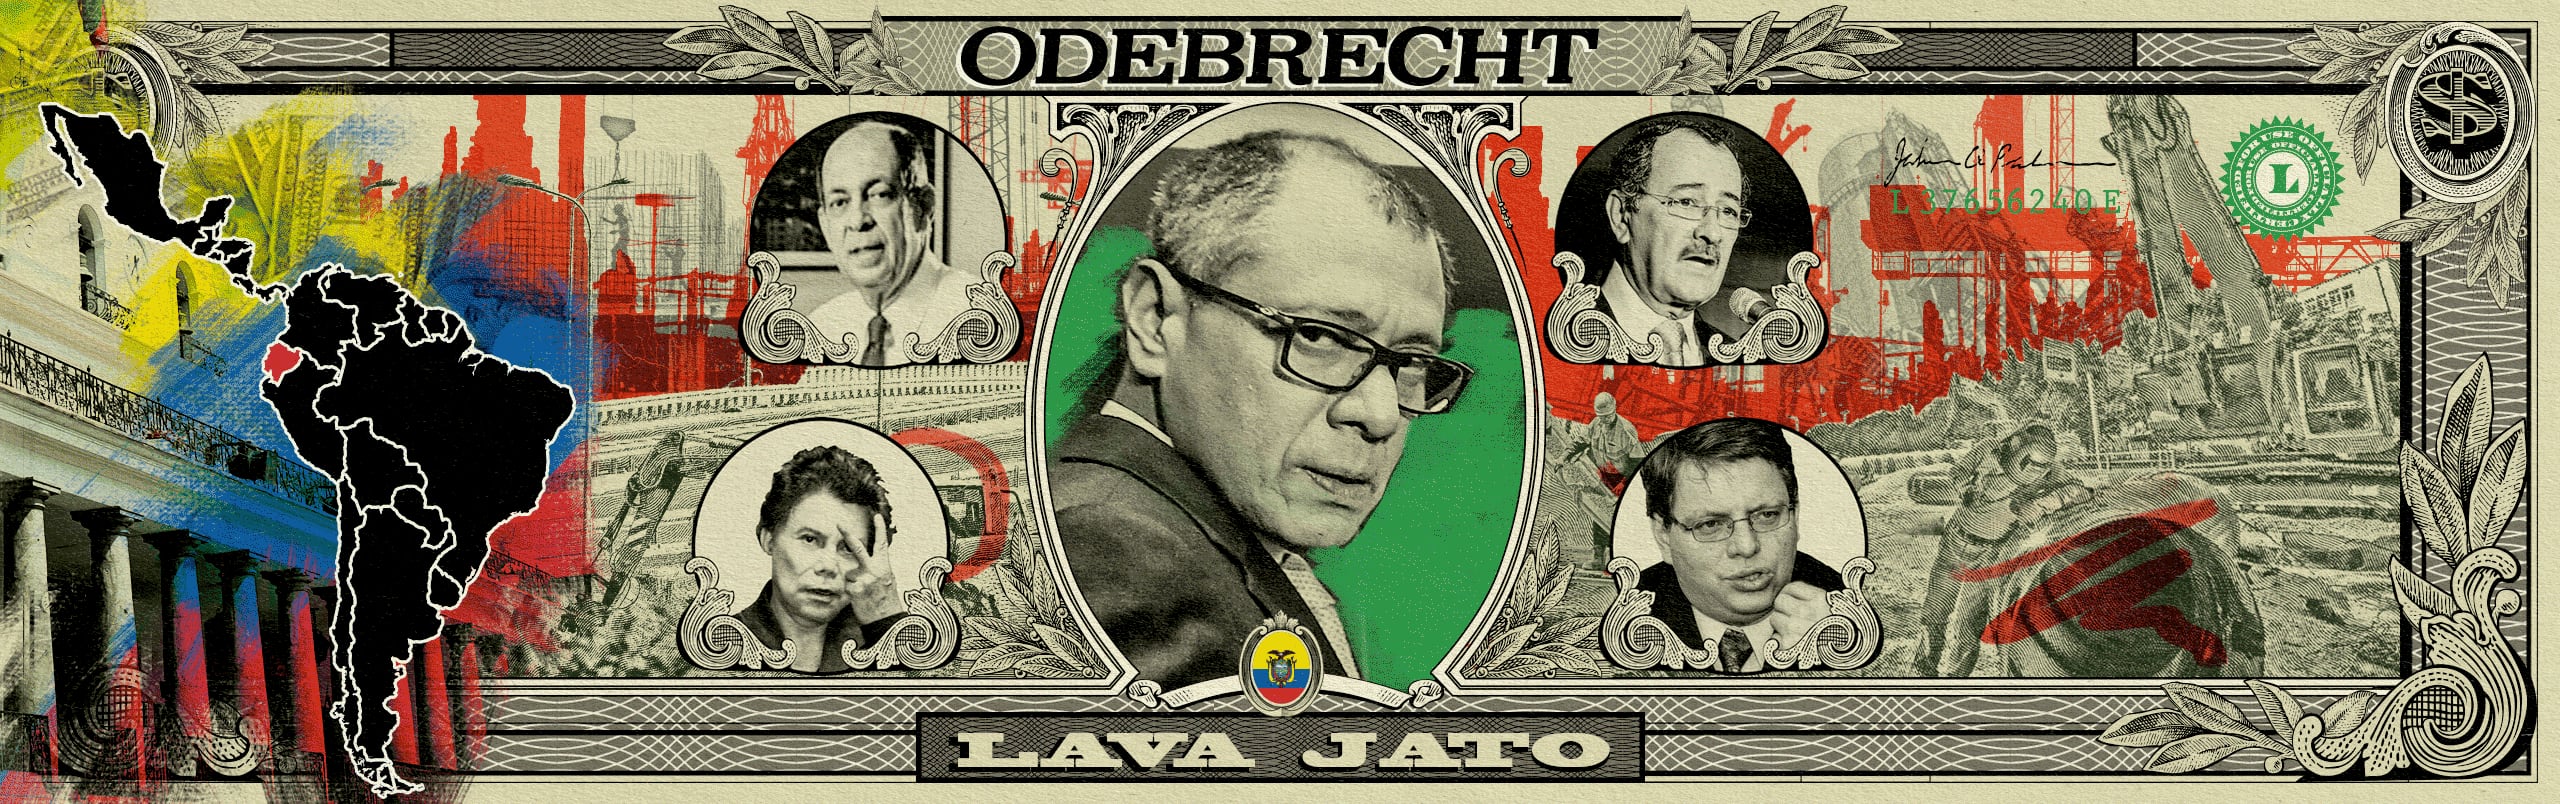 Caso Odebrecht: Doce condenados y $ 105 millones que no se han podido recuperar